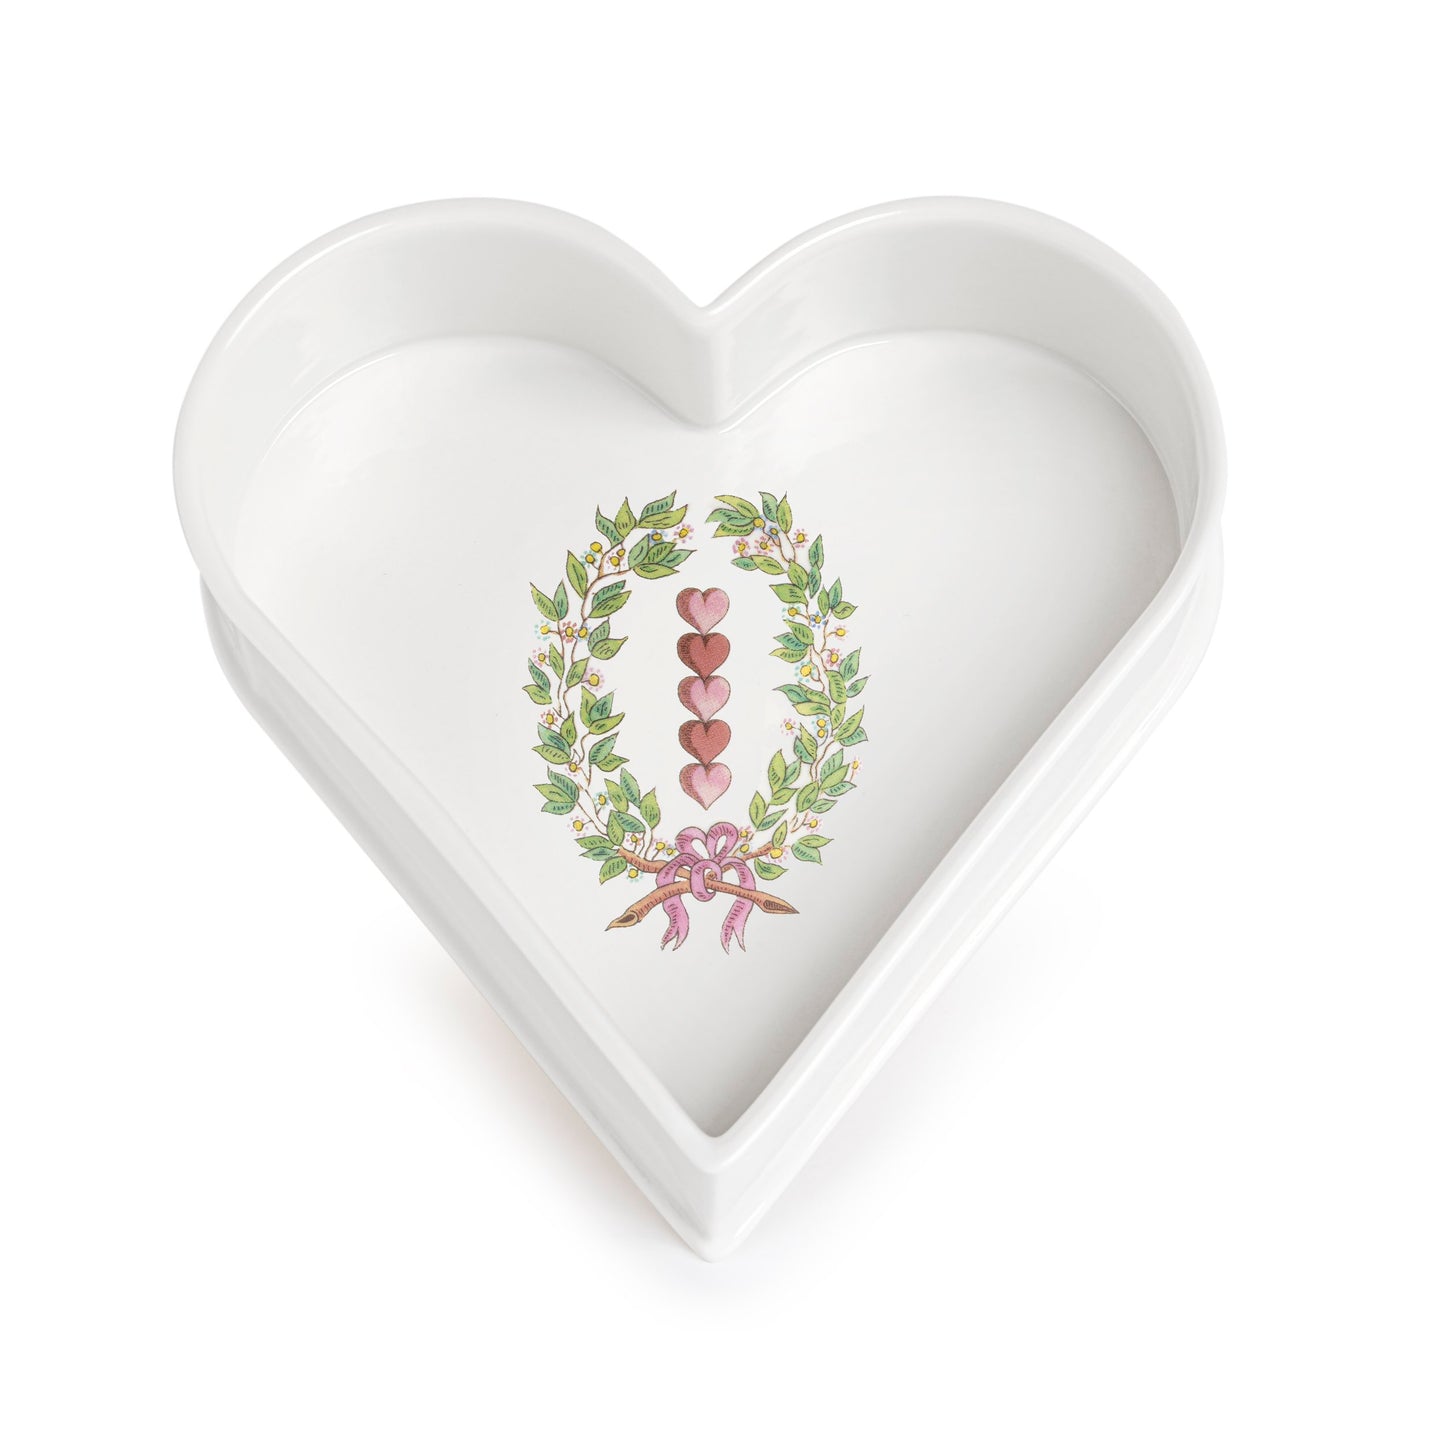 Heart pocket tray | CROWN 5 HEARTS